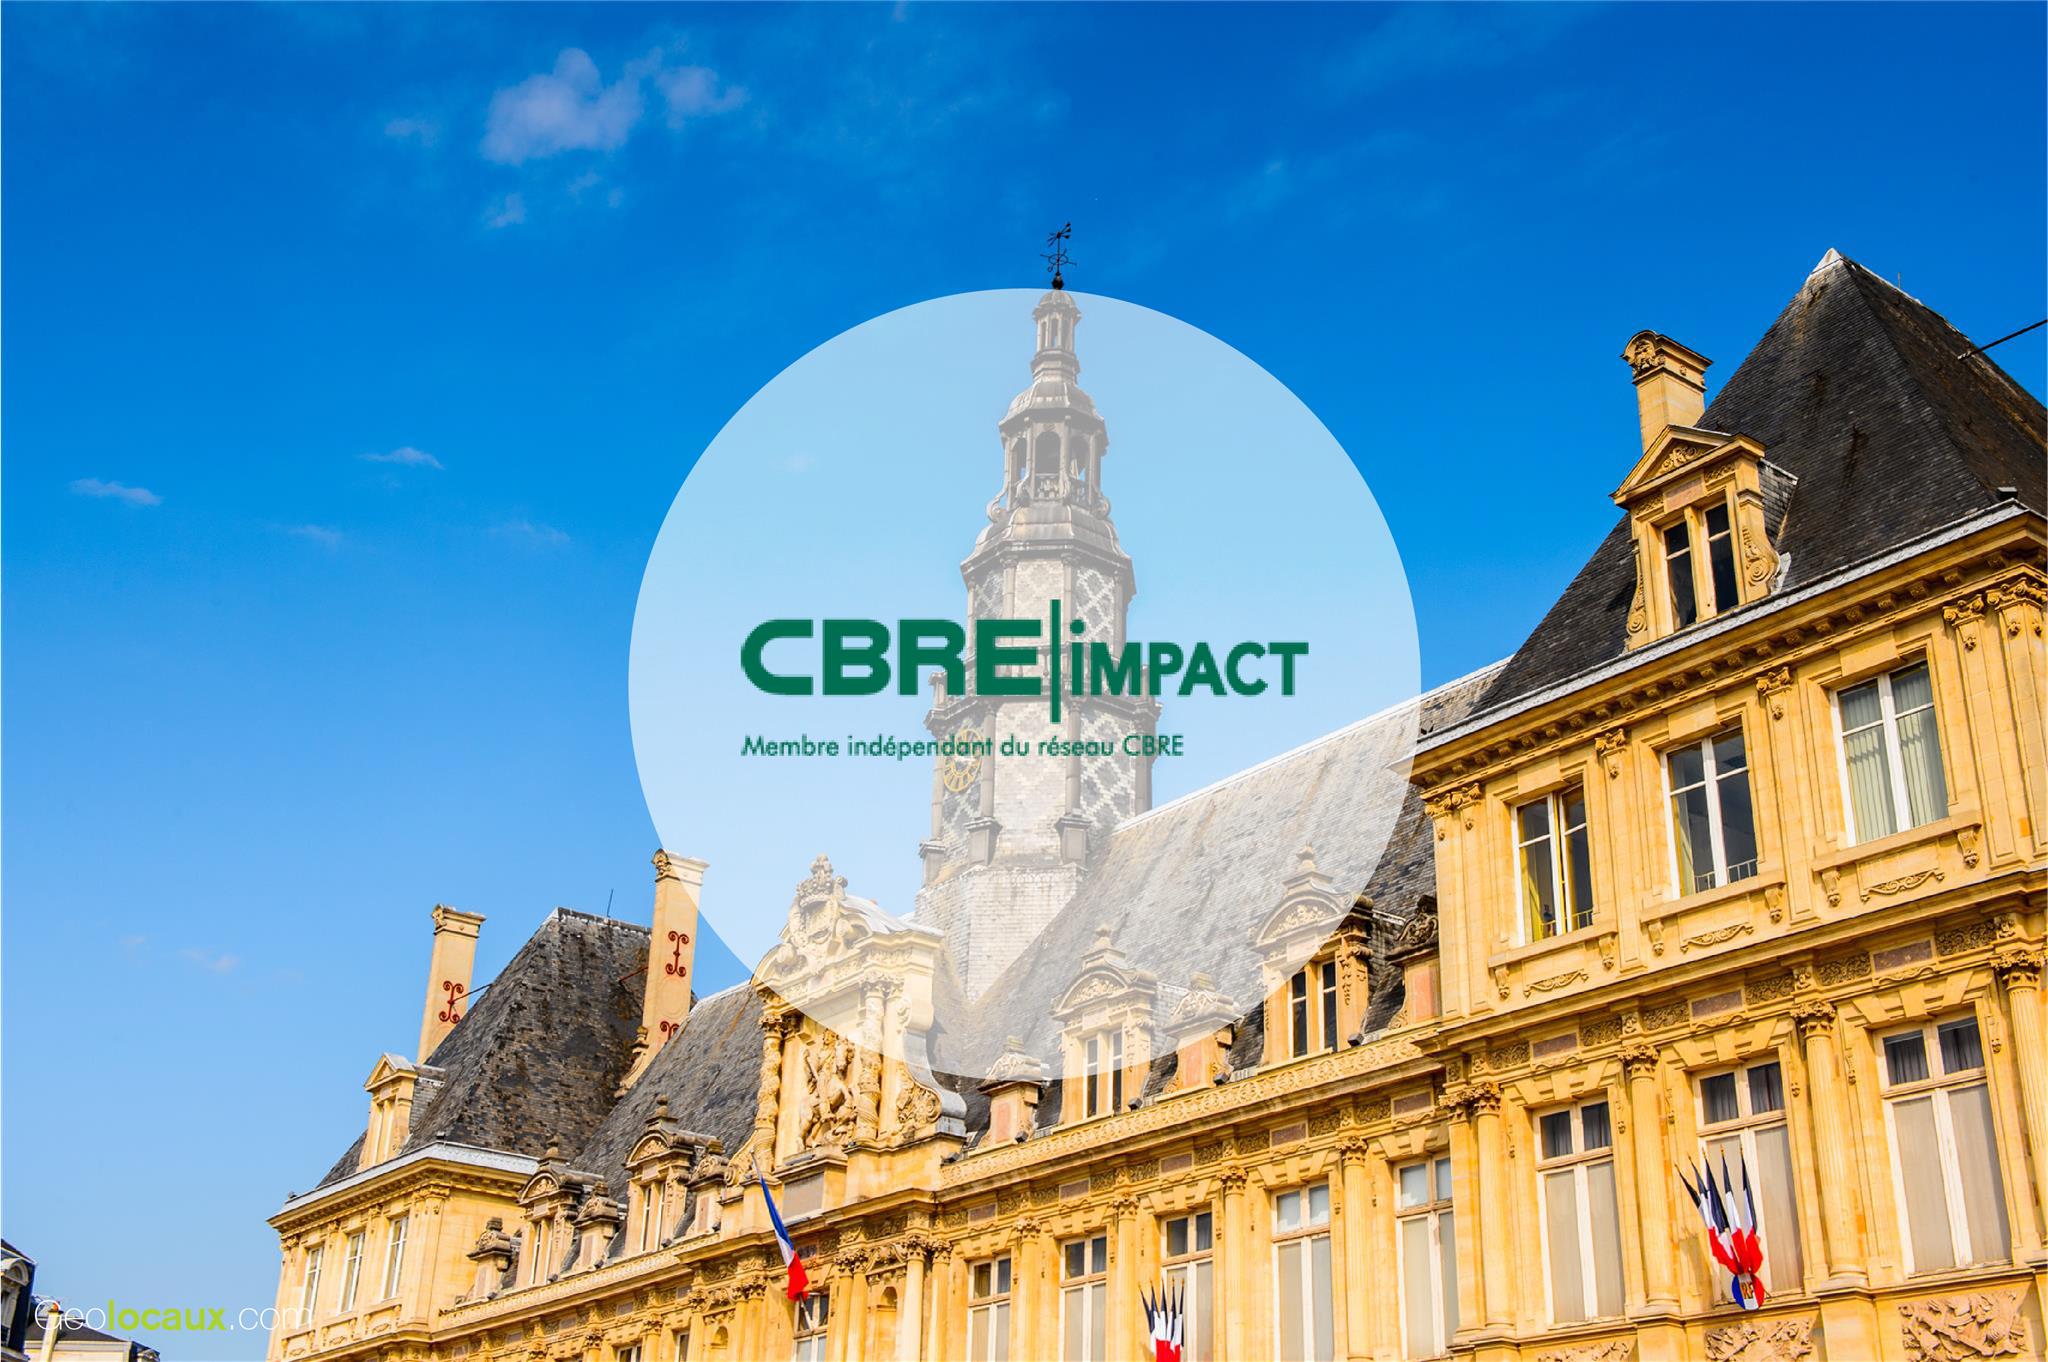 CBRE Impact Reims geolocaux